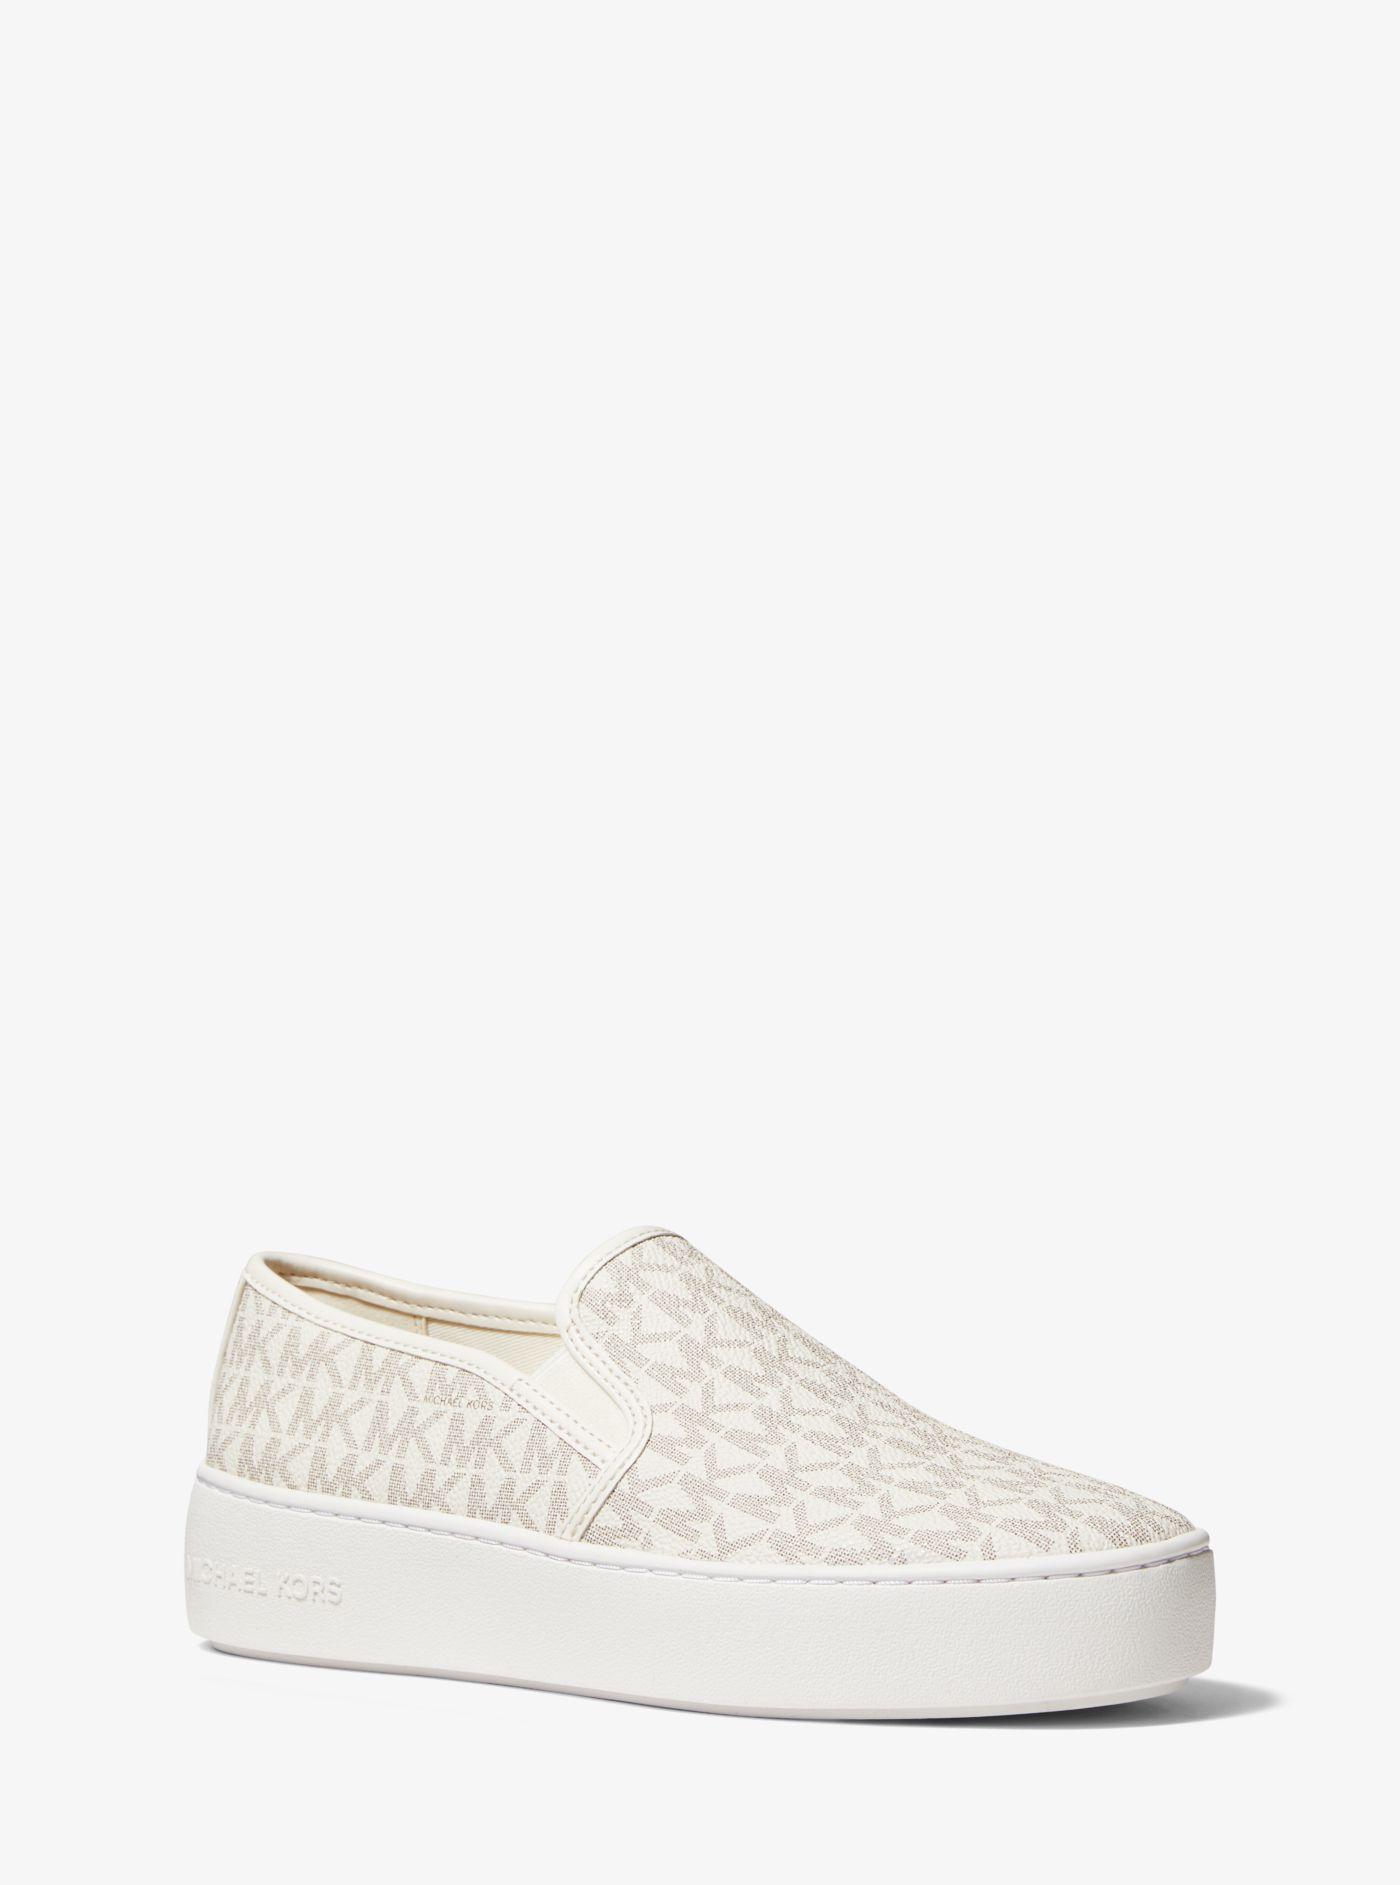 Michael Kors Teddi Logo Slip-on Platform Sneaker in White | Lyst Australia